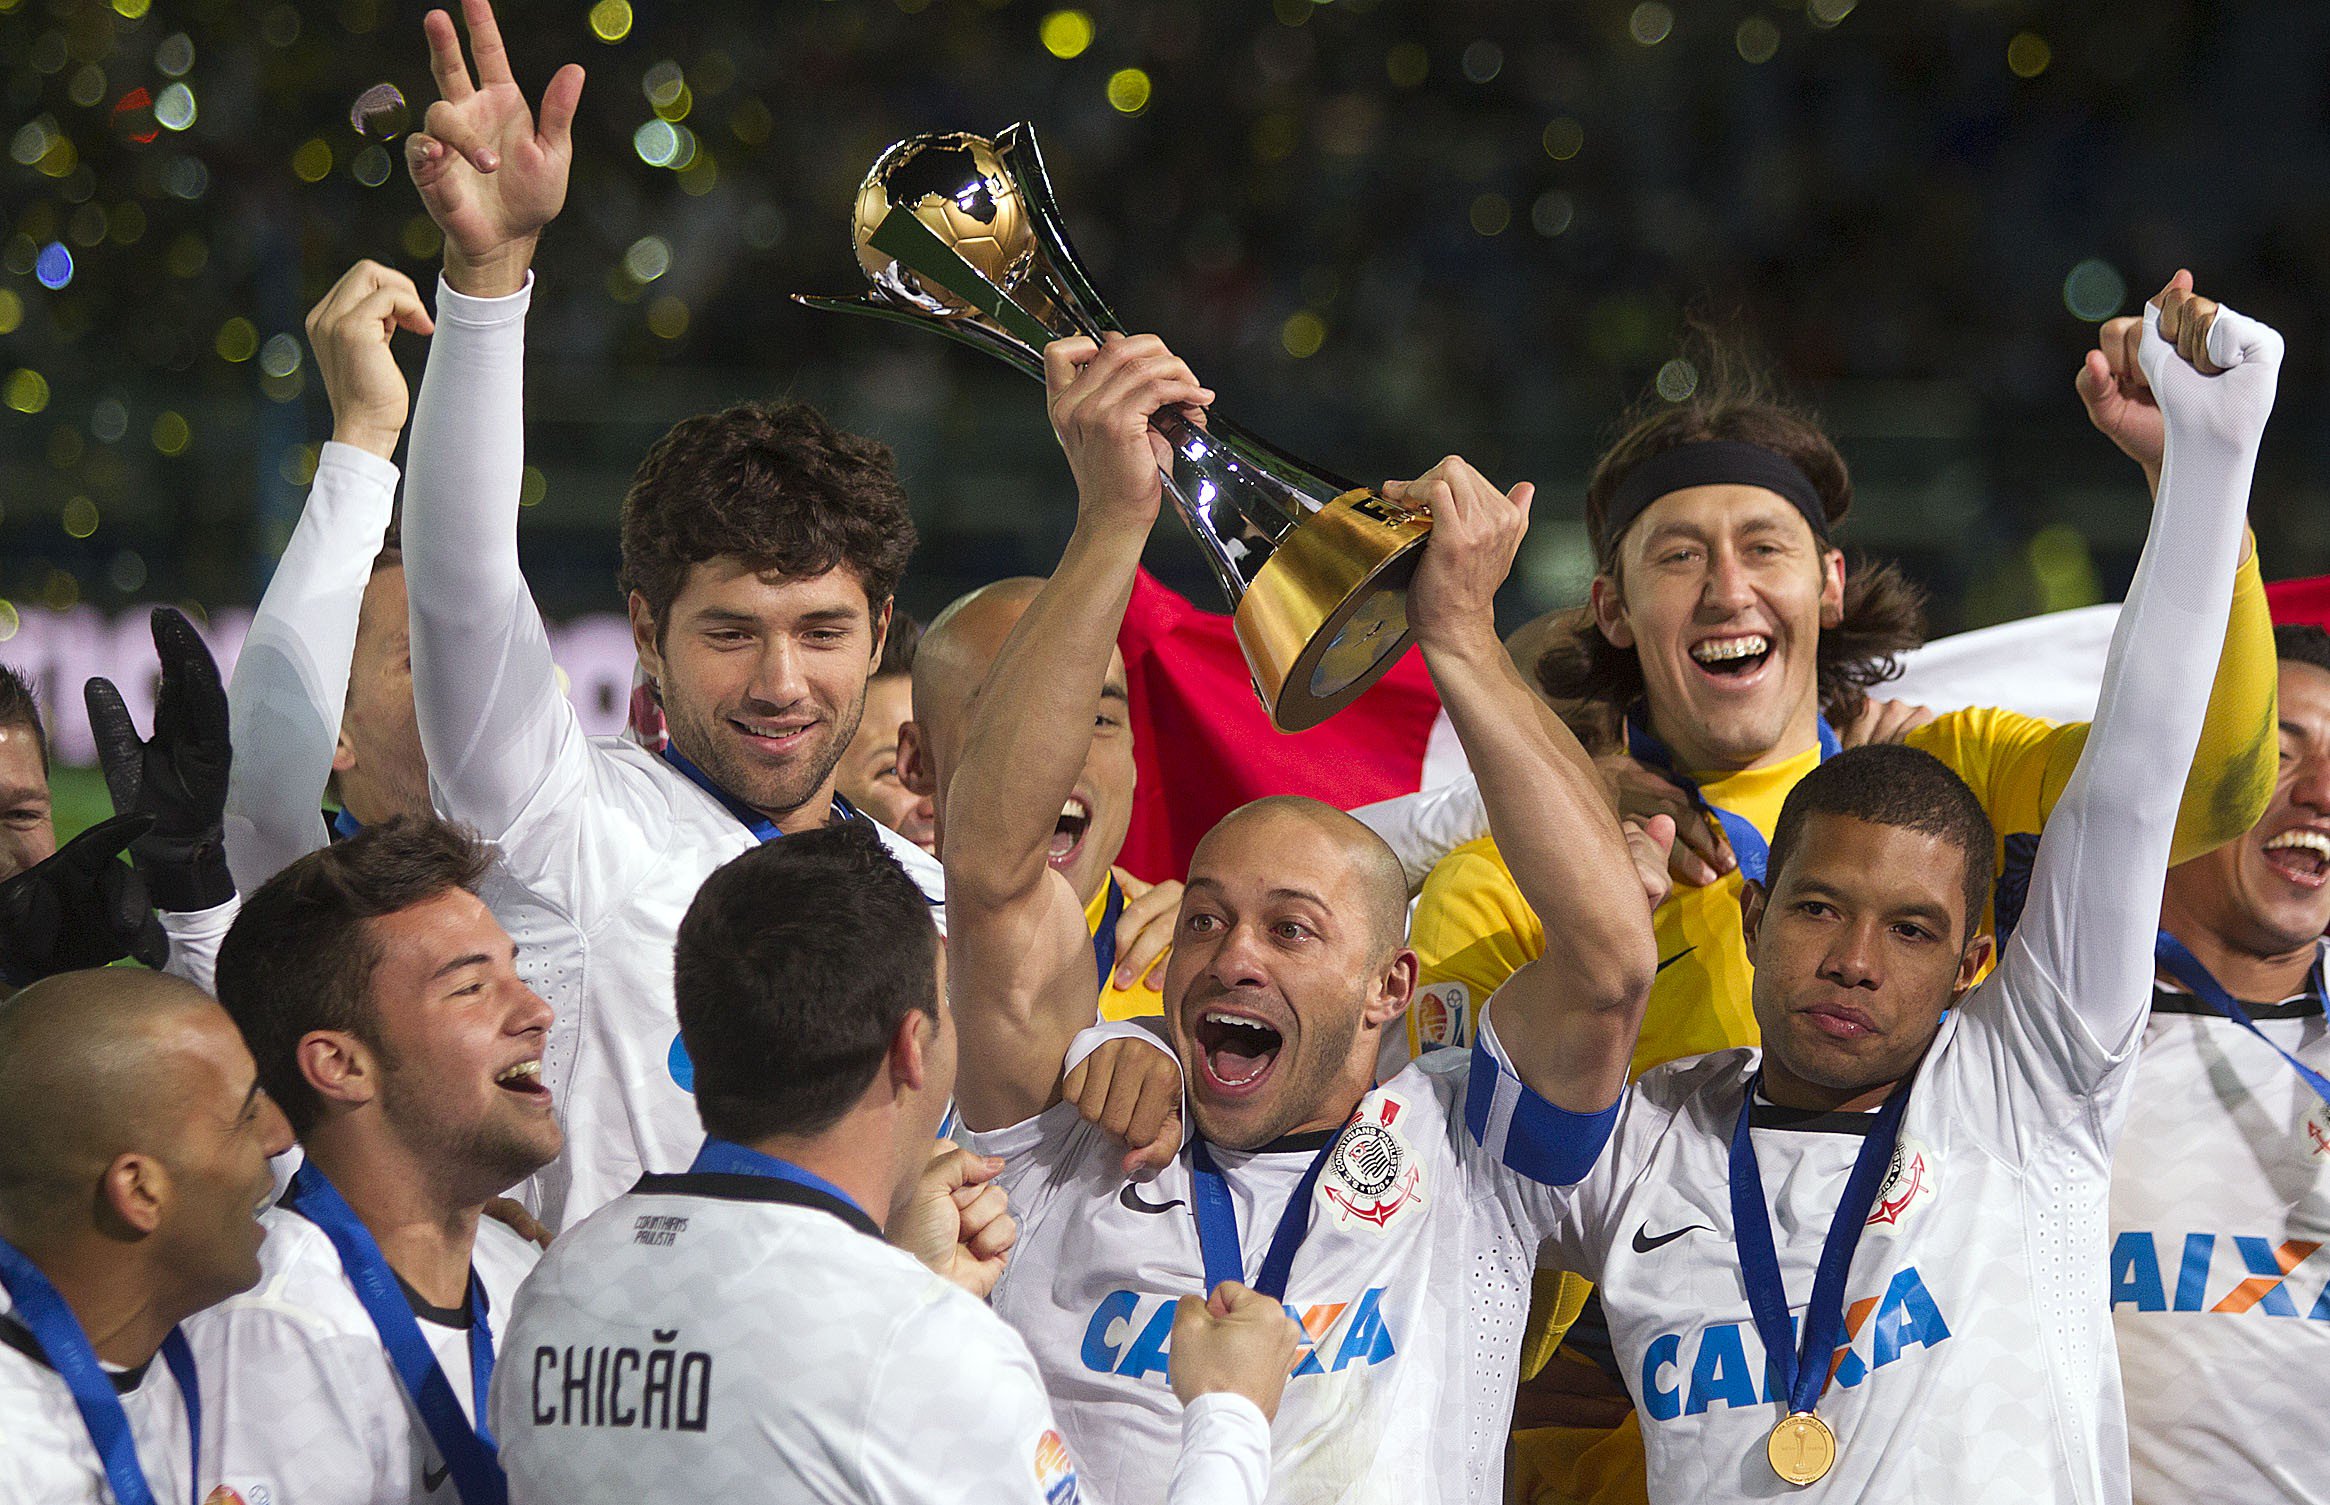 Corinthians Meu Orgulho - O último clube sul-americano campeão do mundial  passando na sua tela. 🏆🌎🦅